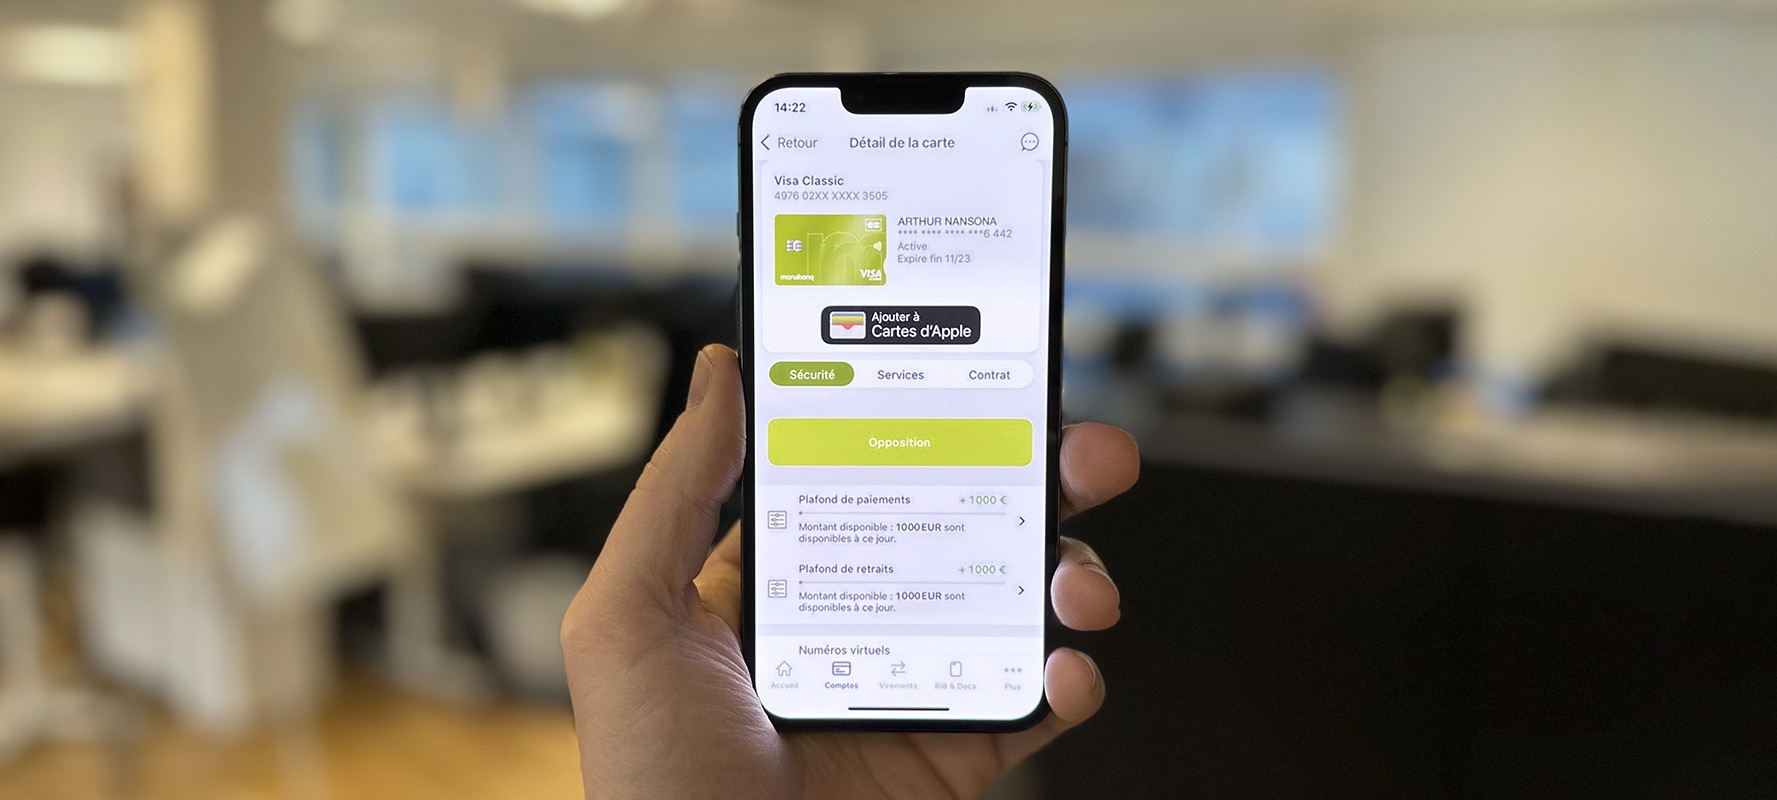 L'application iOS de Monabanq montrant un compte client sur iPhone